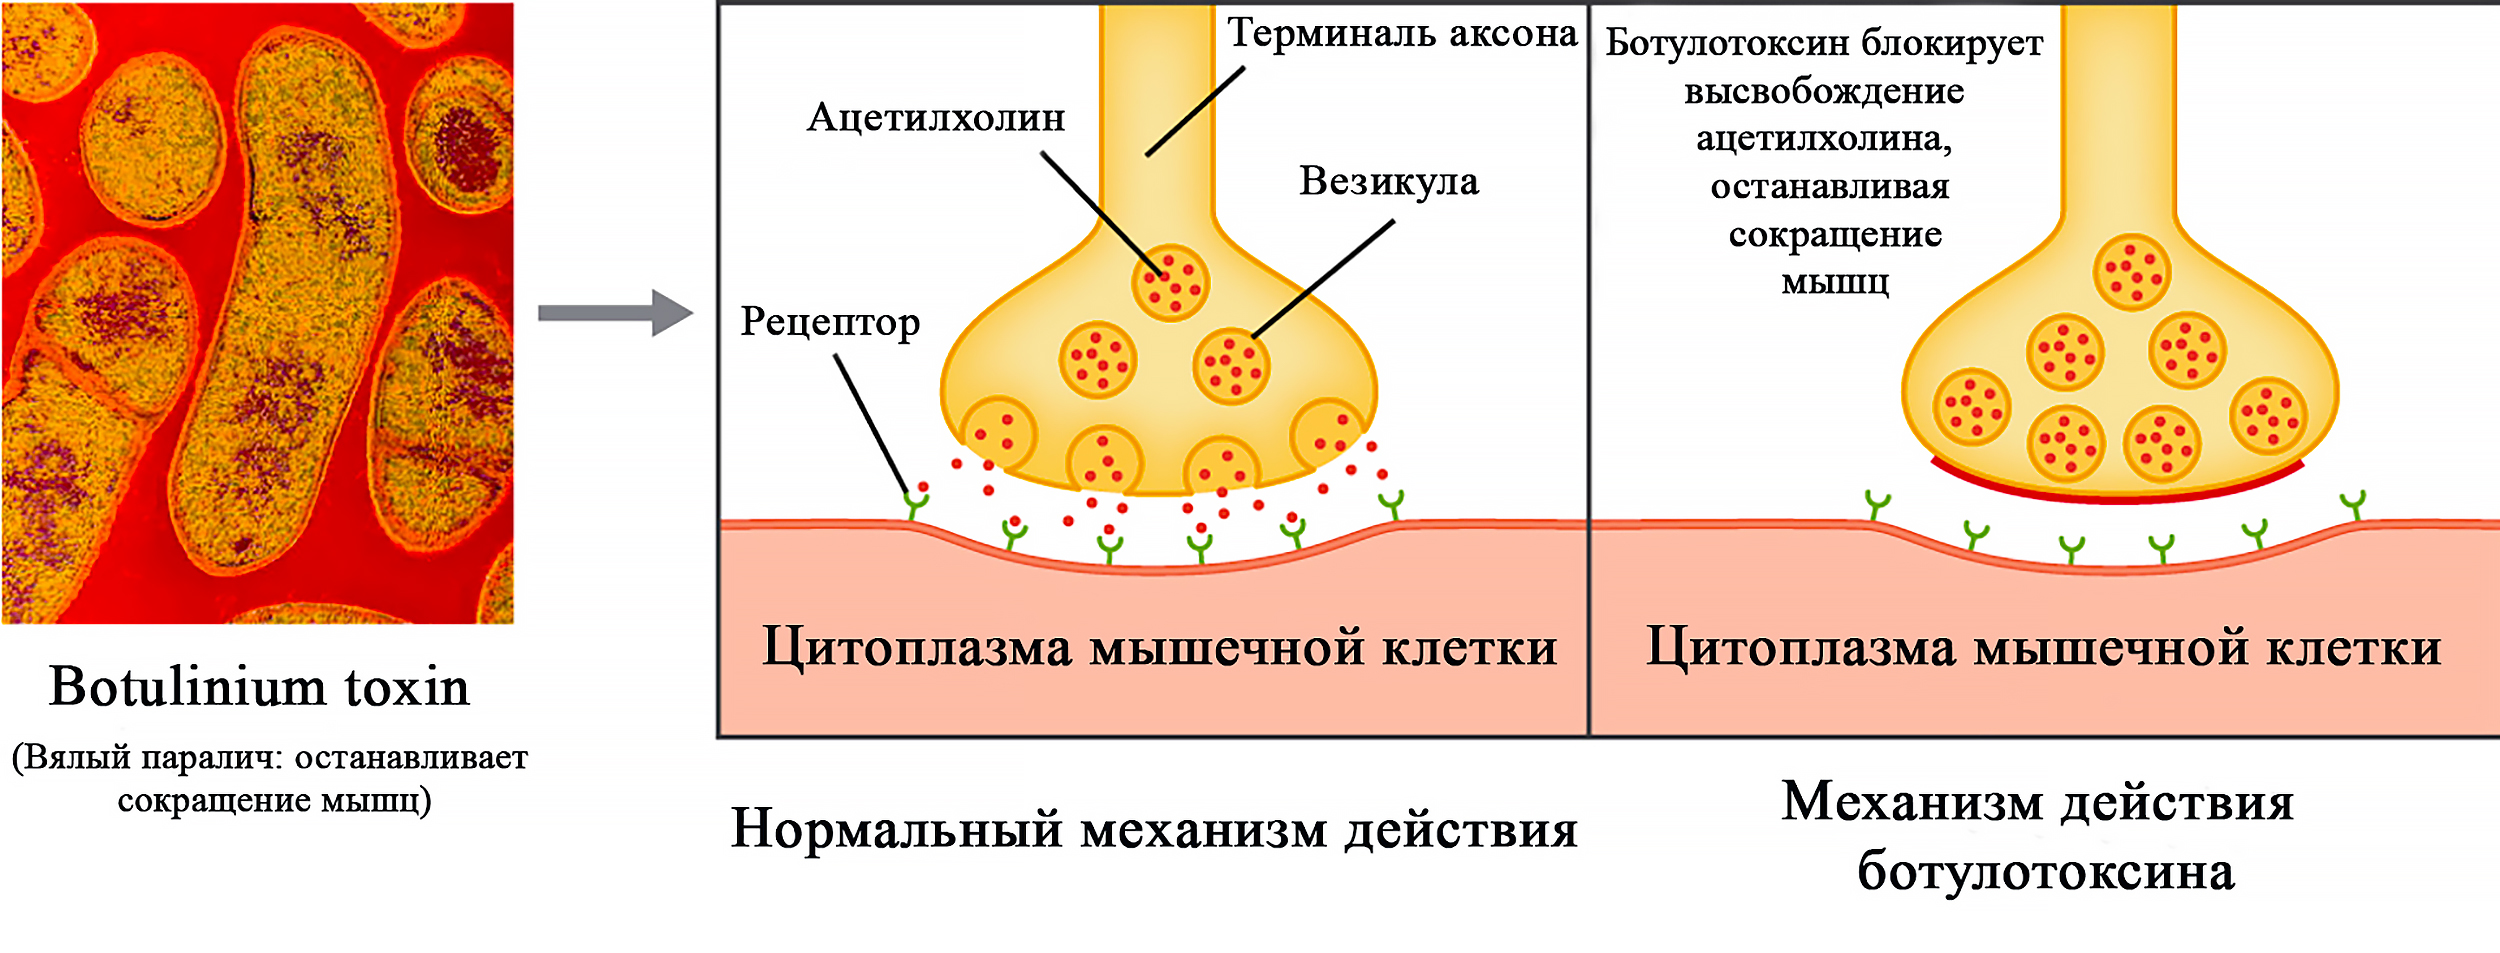 Механизм действия ботулотоксина